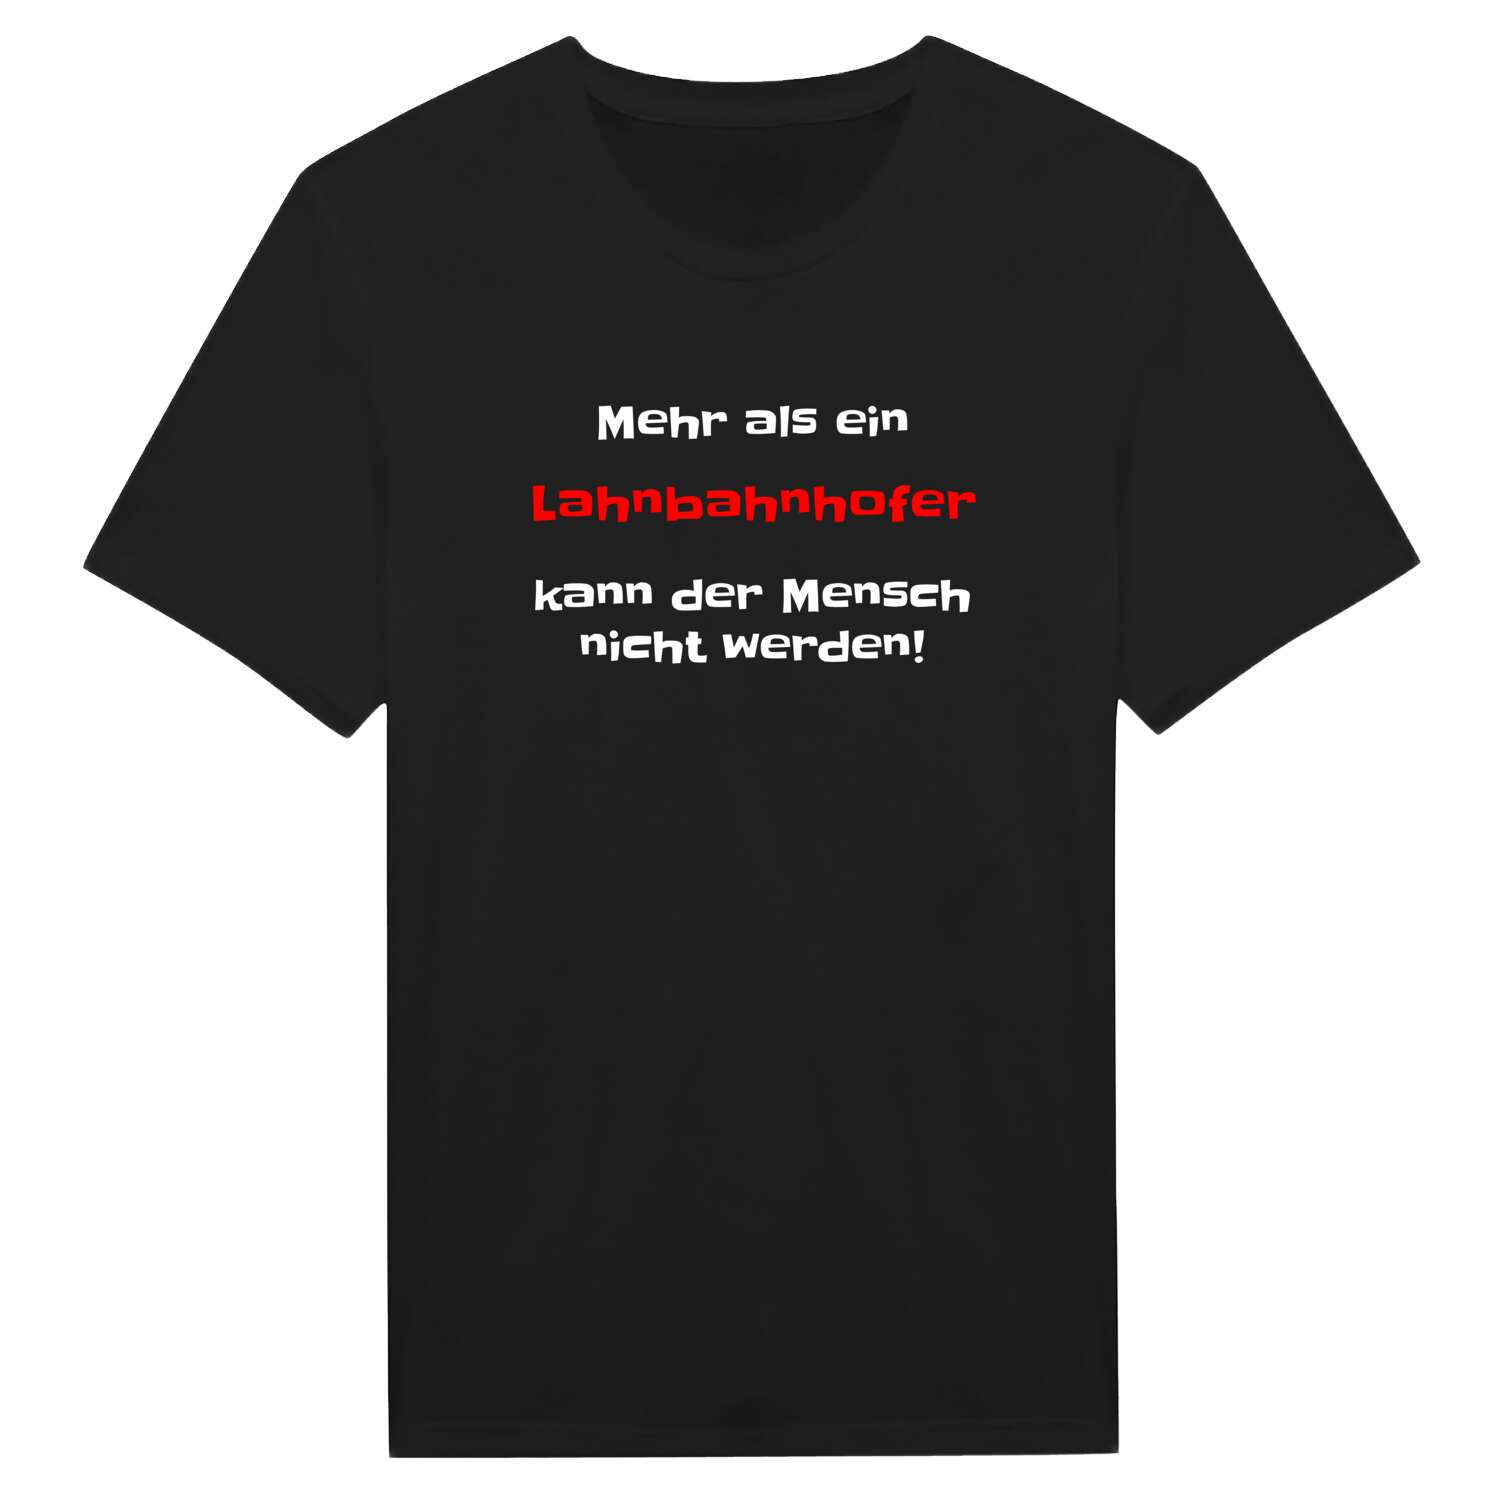 Lahnbahnhof T-Shirt »Mehr als ein«